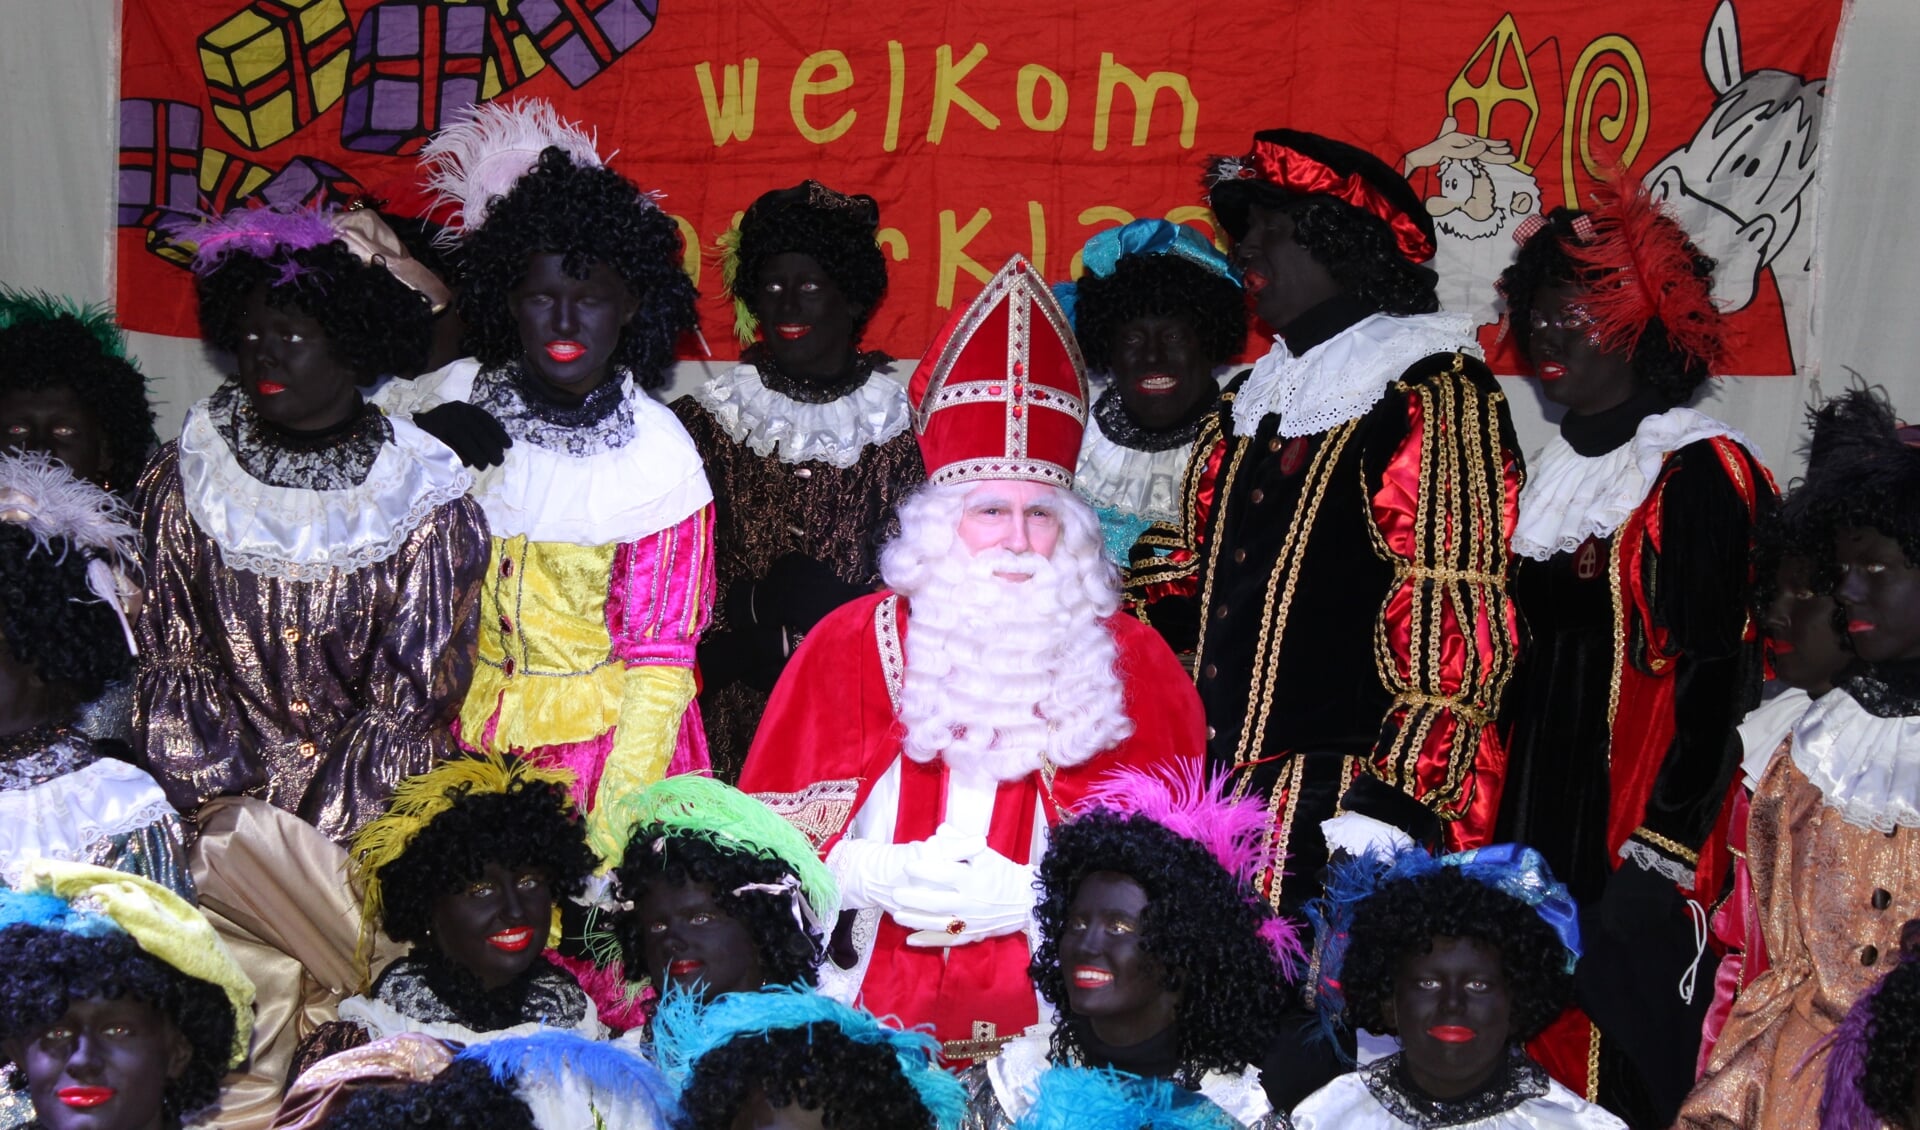 Sint en zijn Pieten voelden zich weer zeer welkom in Oostzaan.